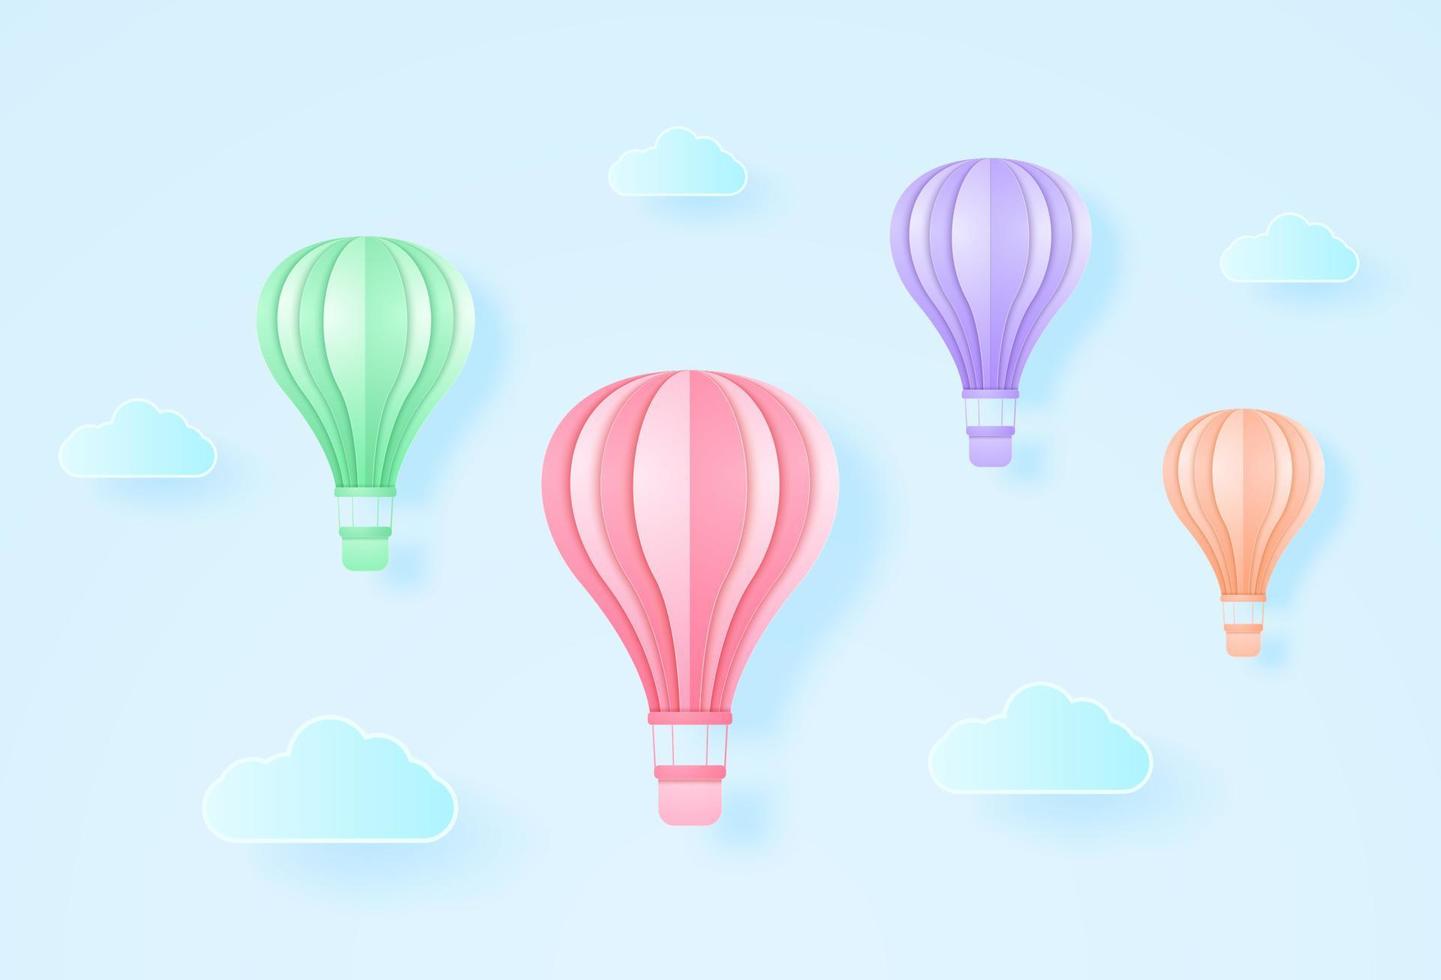 kleurrijke heteluchtballonnen die in de blauwe lucht vliegen, papierkunststijl vector